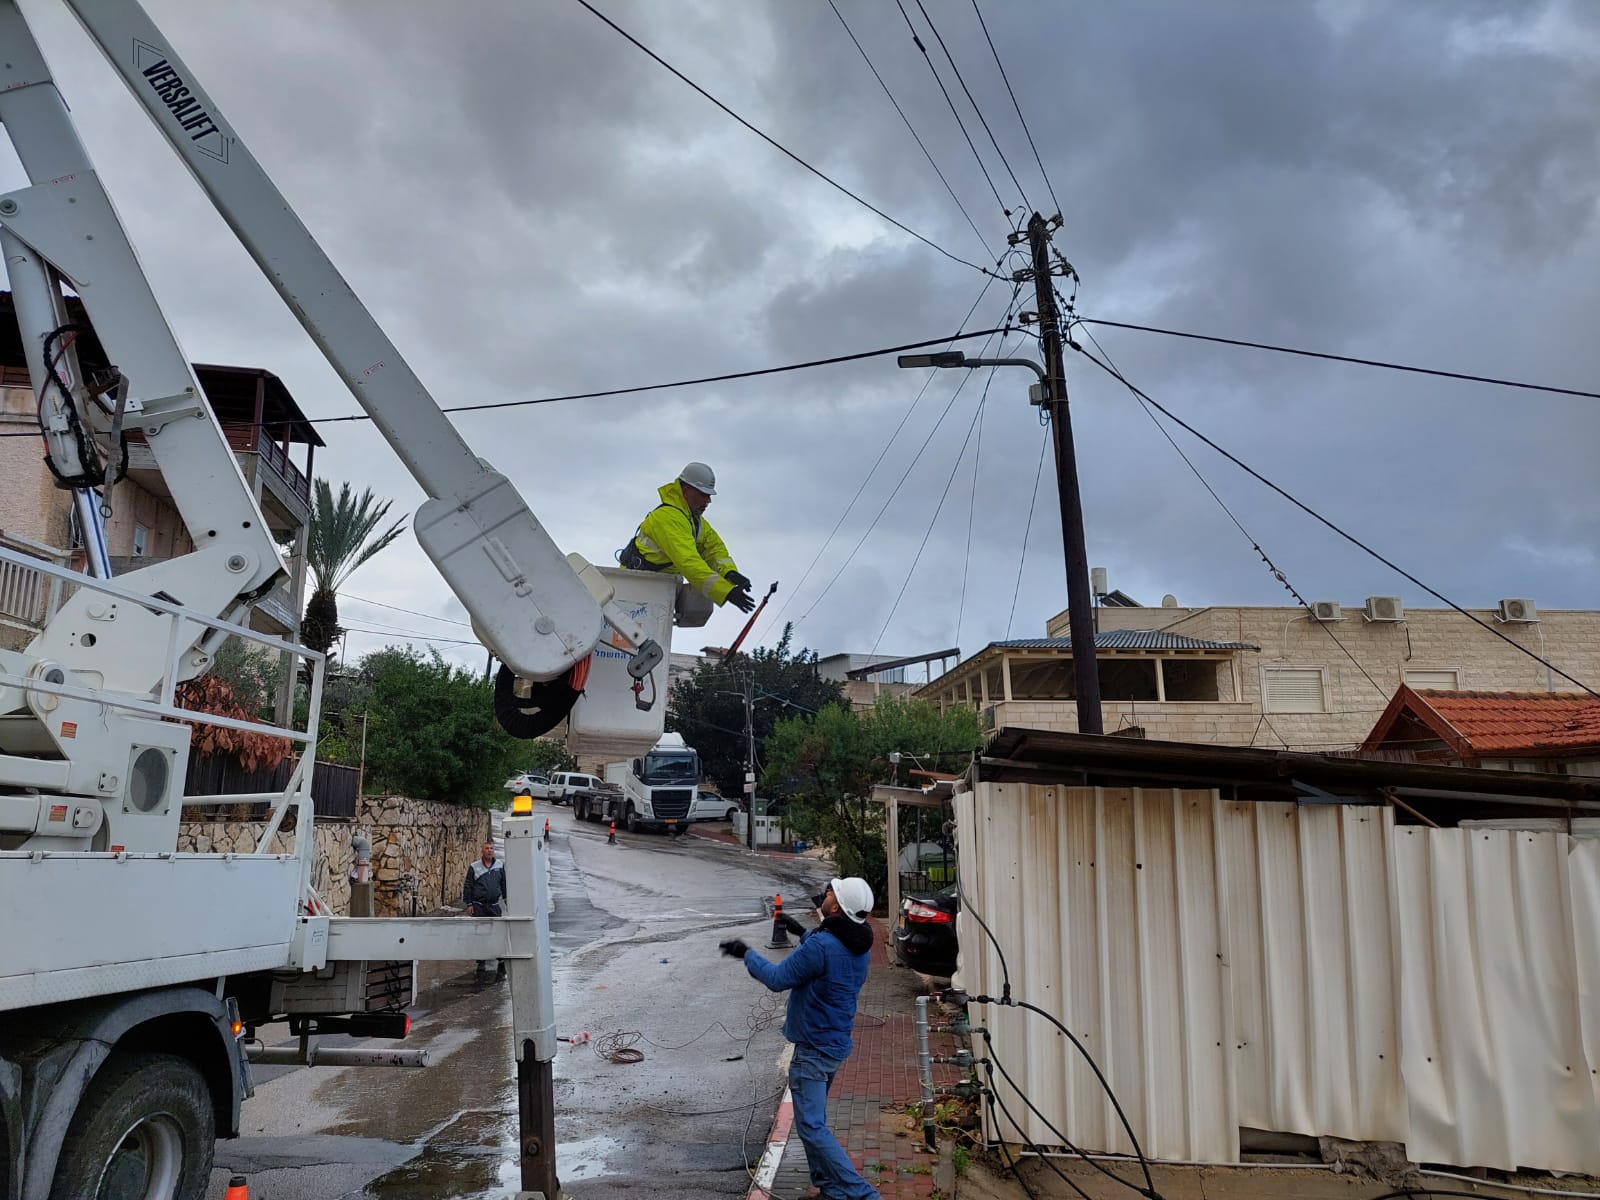 עובדי חברת החשמל בביצוע עבודות תחזוקה וטיפול בתקלות במהלך הסופה ״כרמל״ (צילום: חברת החשמל לישראל)